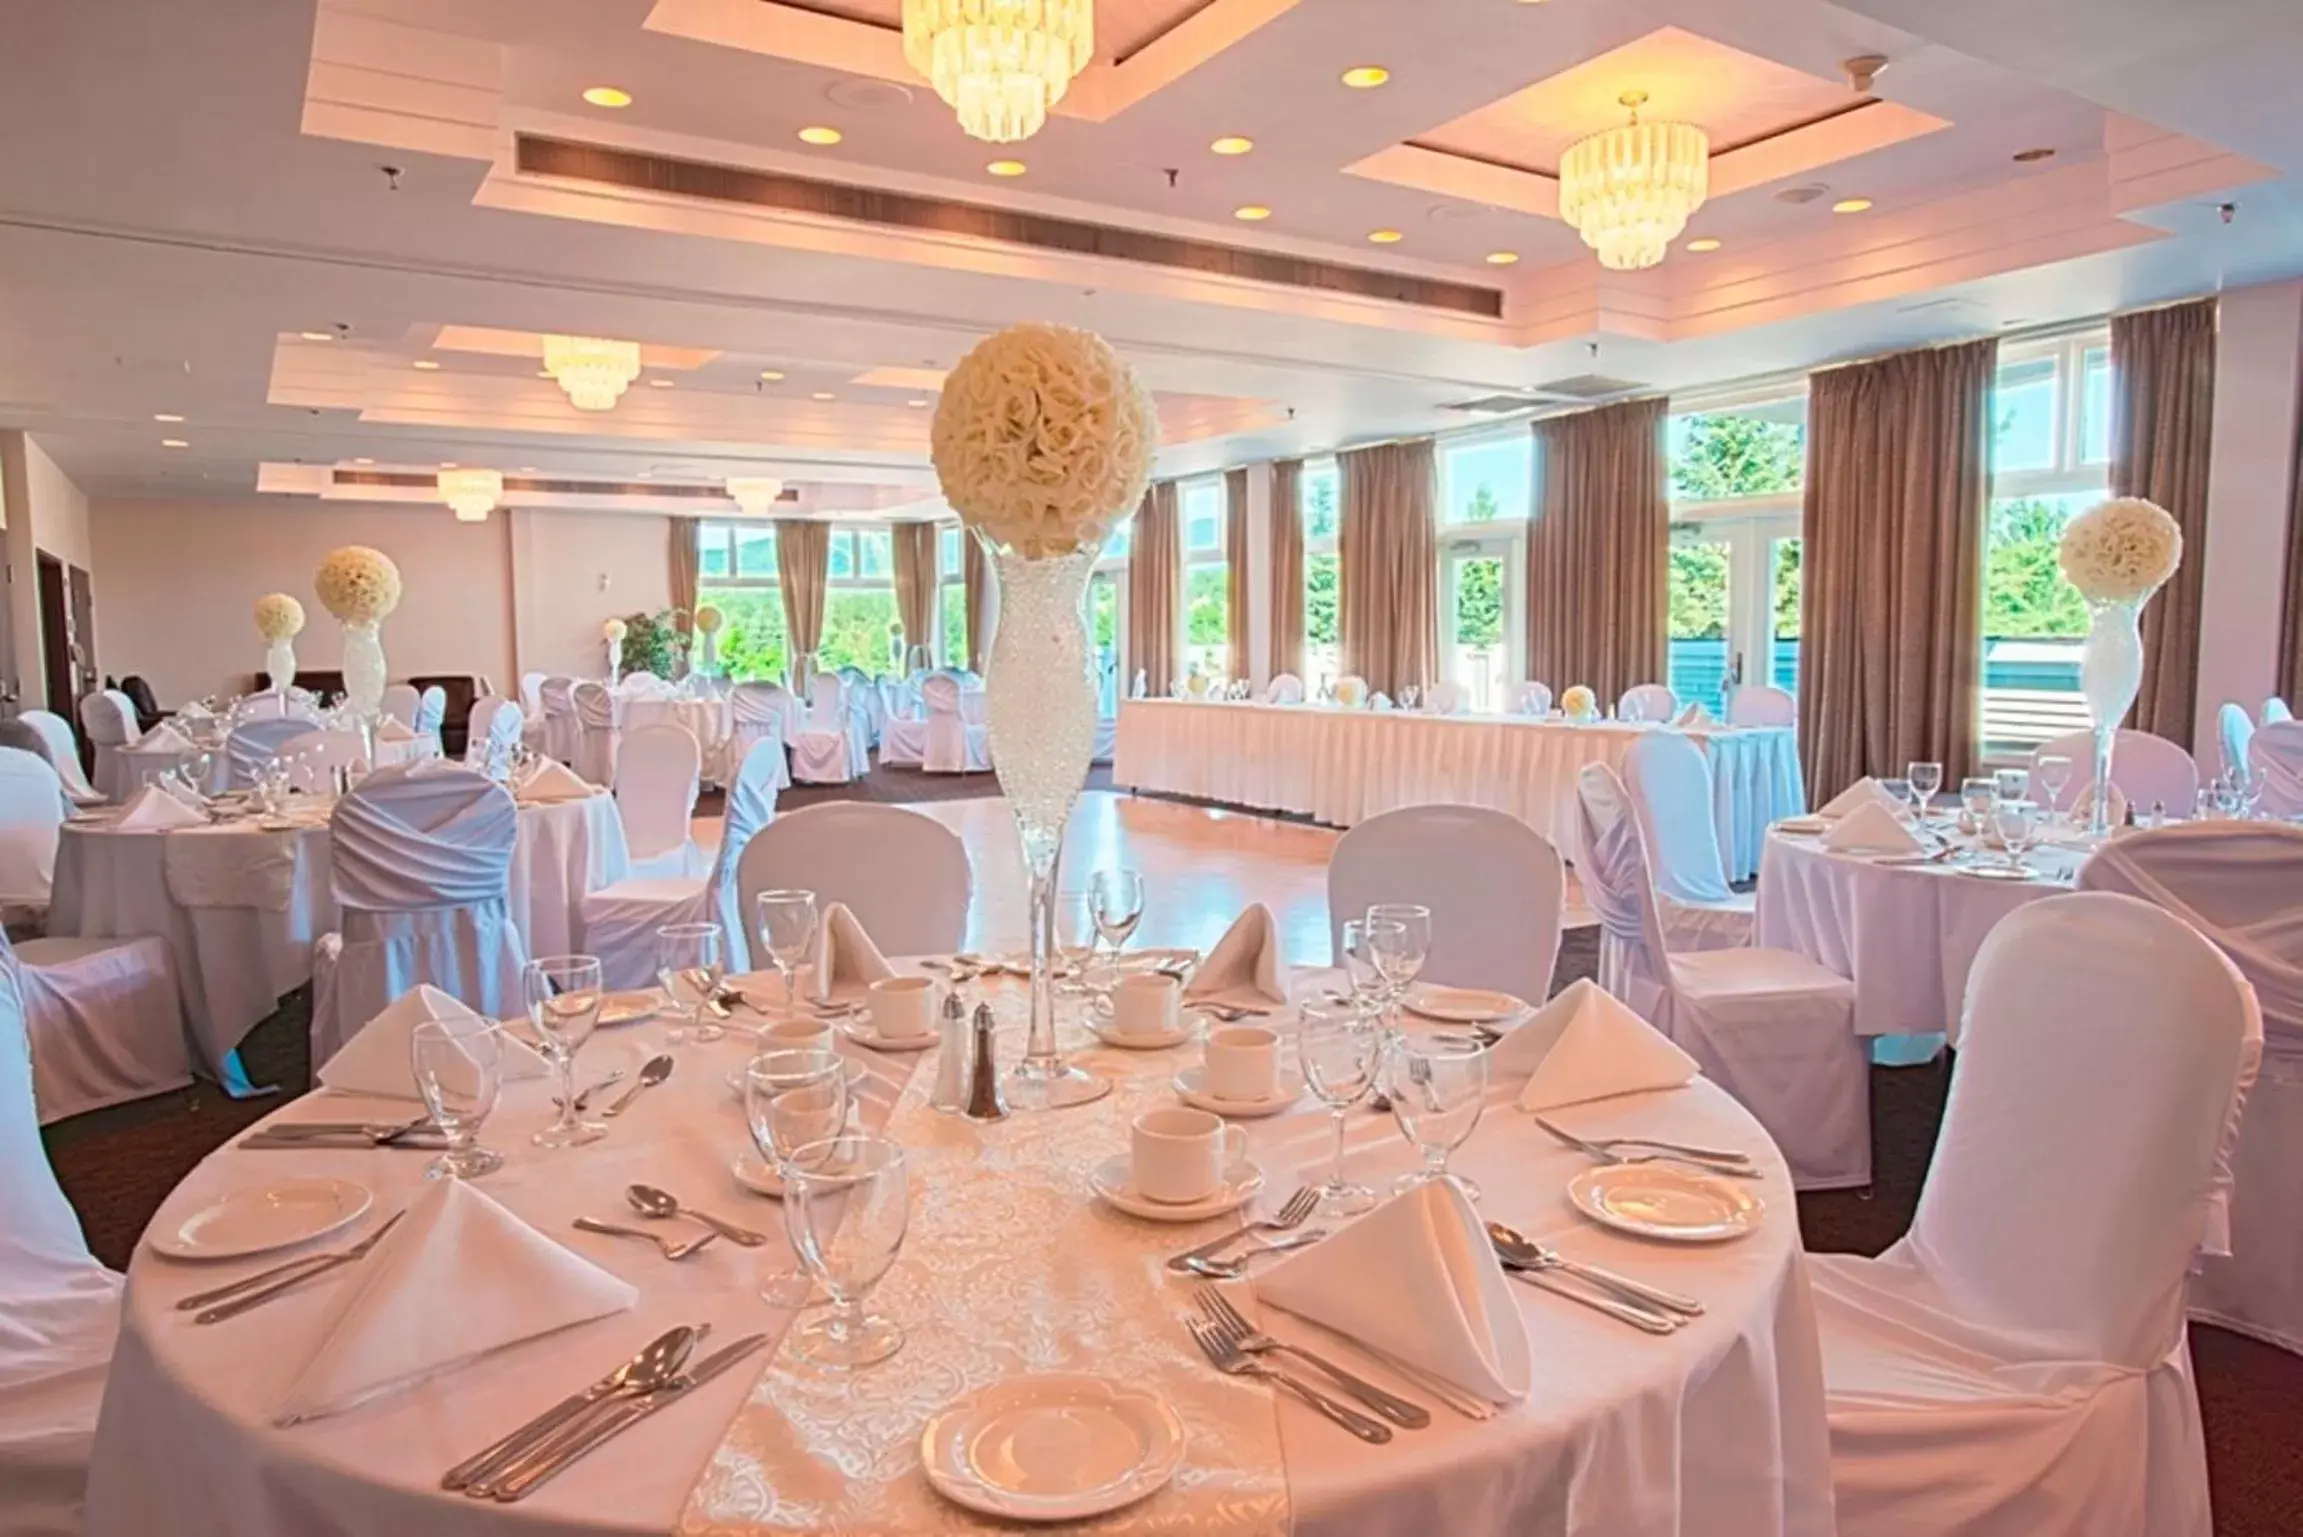 Banquet/Function facilities, Restaurant/Places to Eat in Manoir des Sables Hôtel & Golf